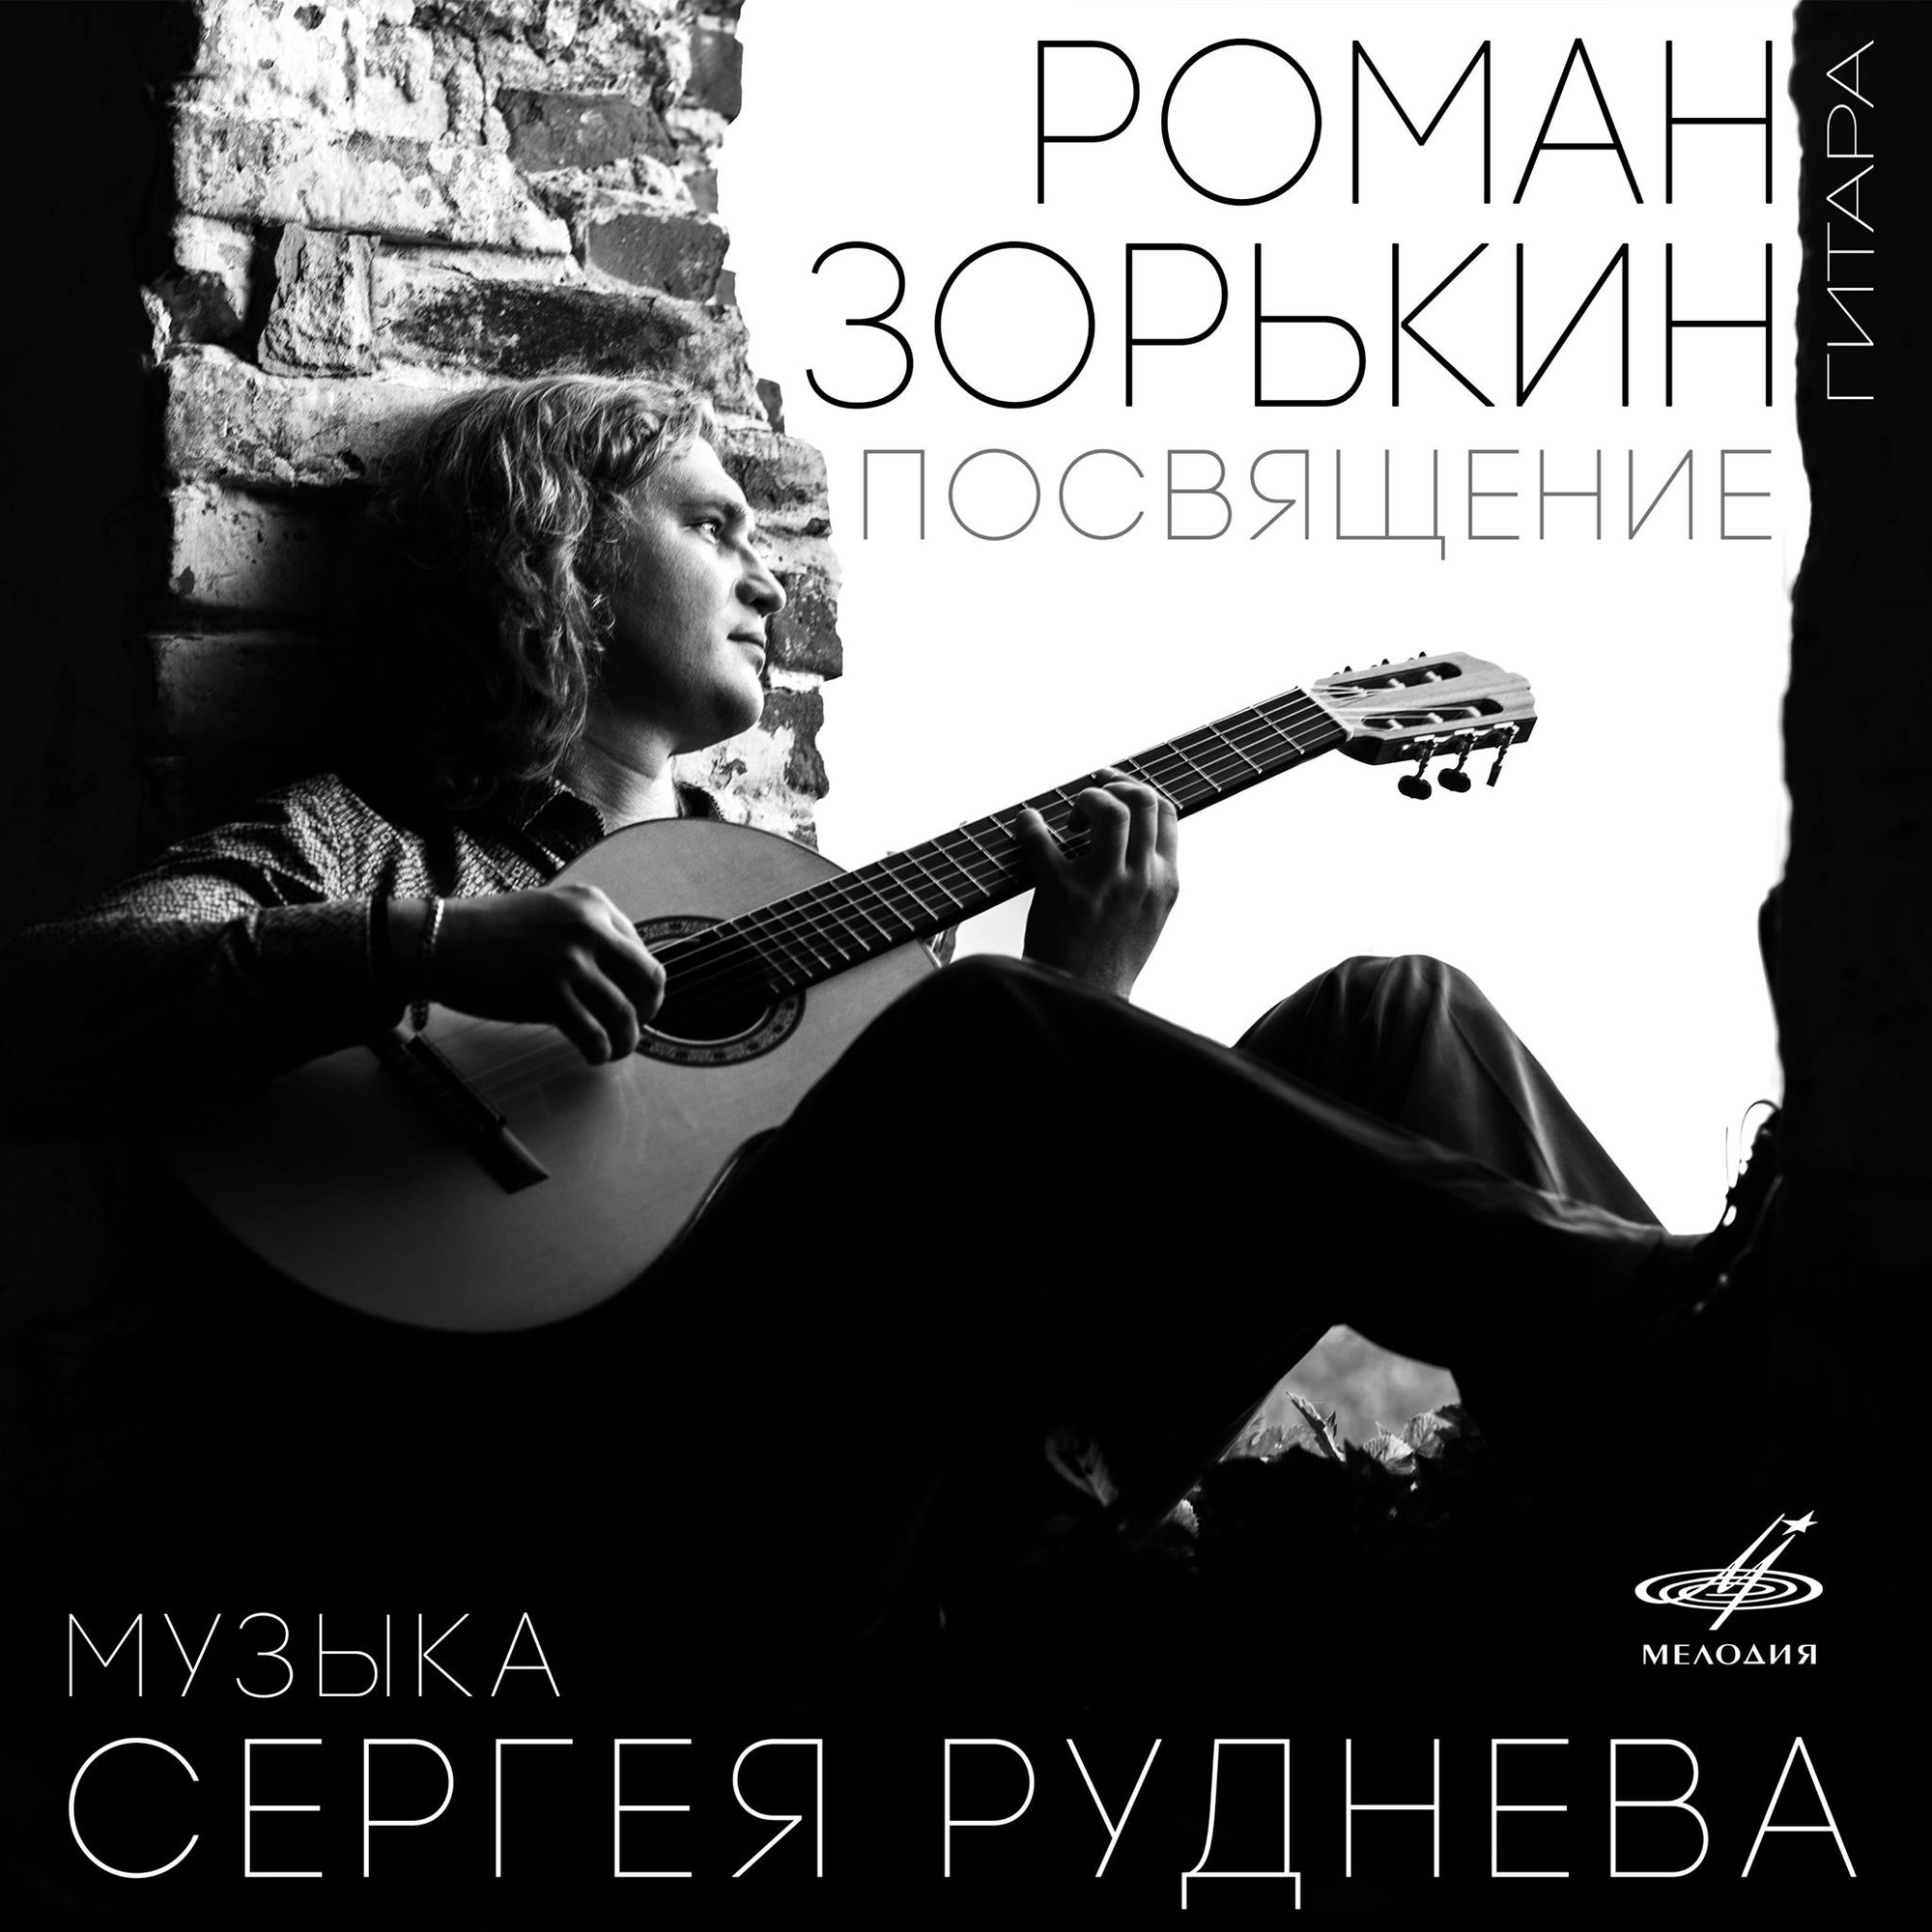 Посвящение. Роман Зорькин, гитара. Музыка Сергея Руднева